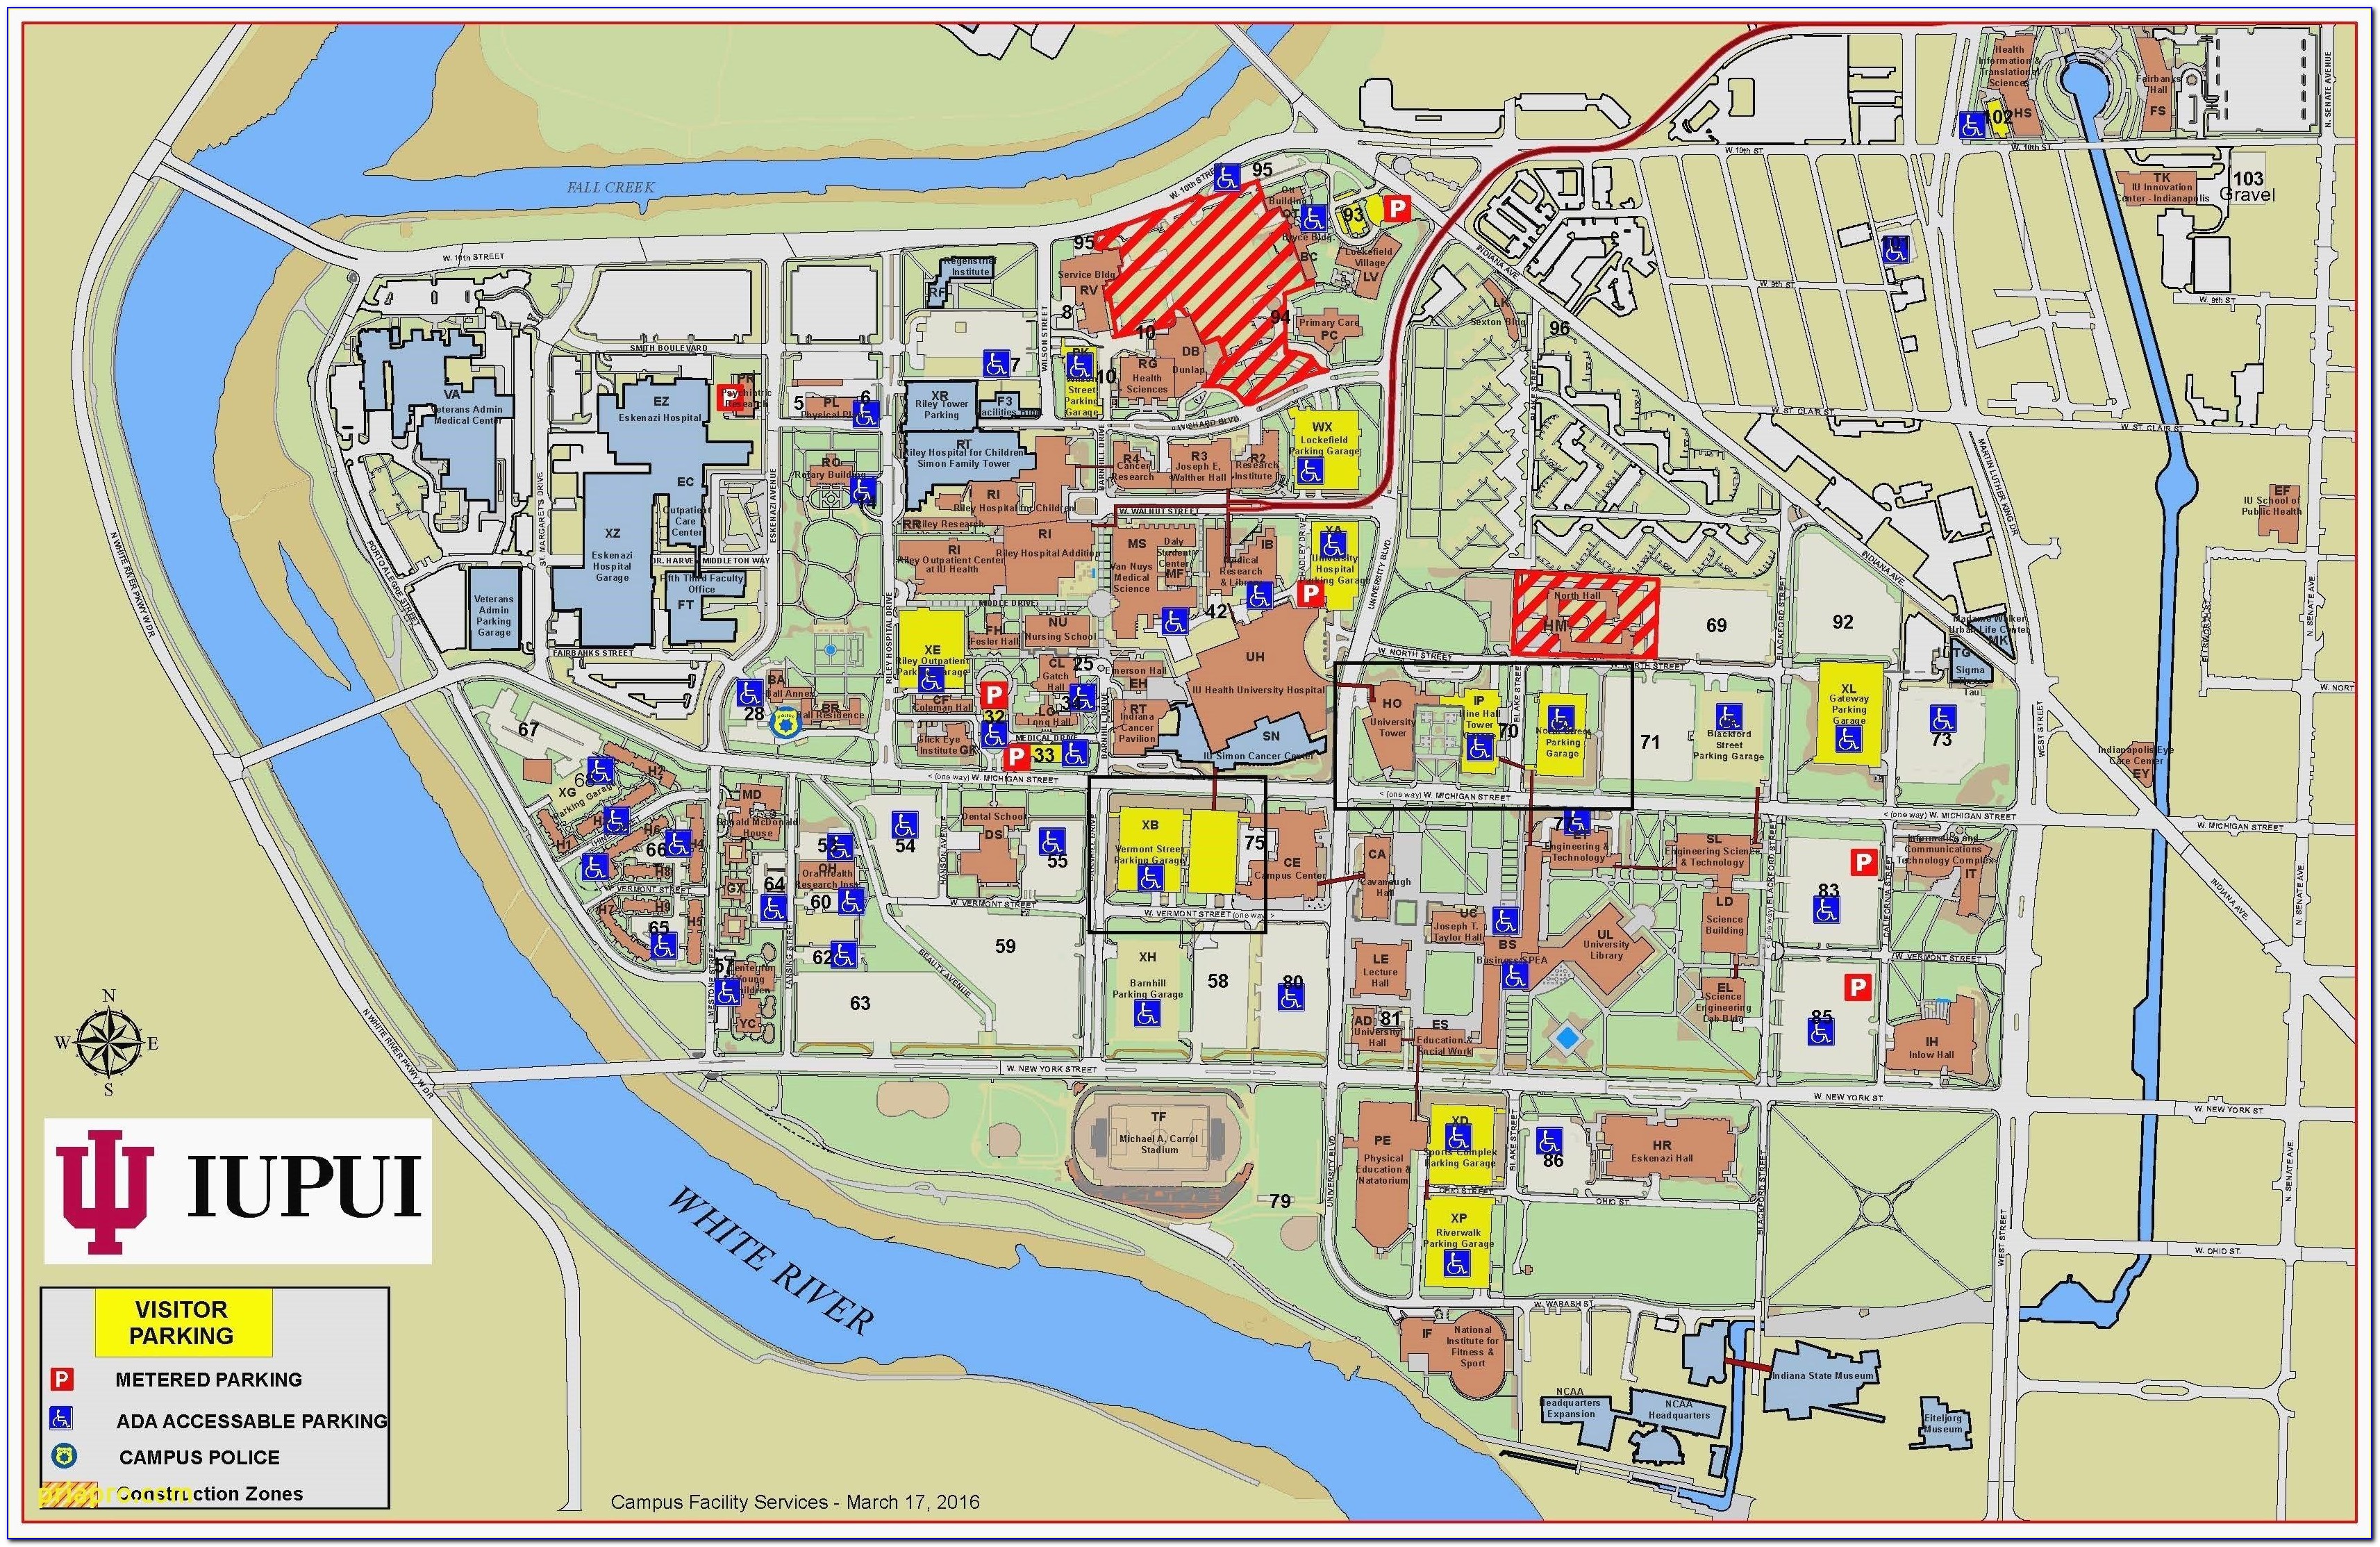 Iupui Campus Map